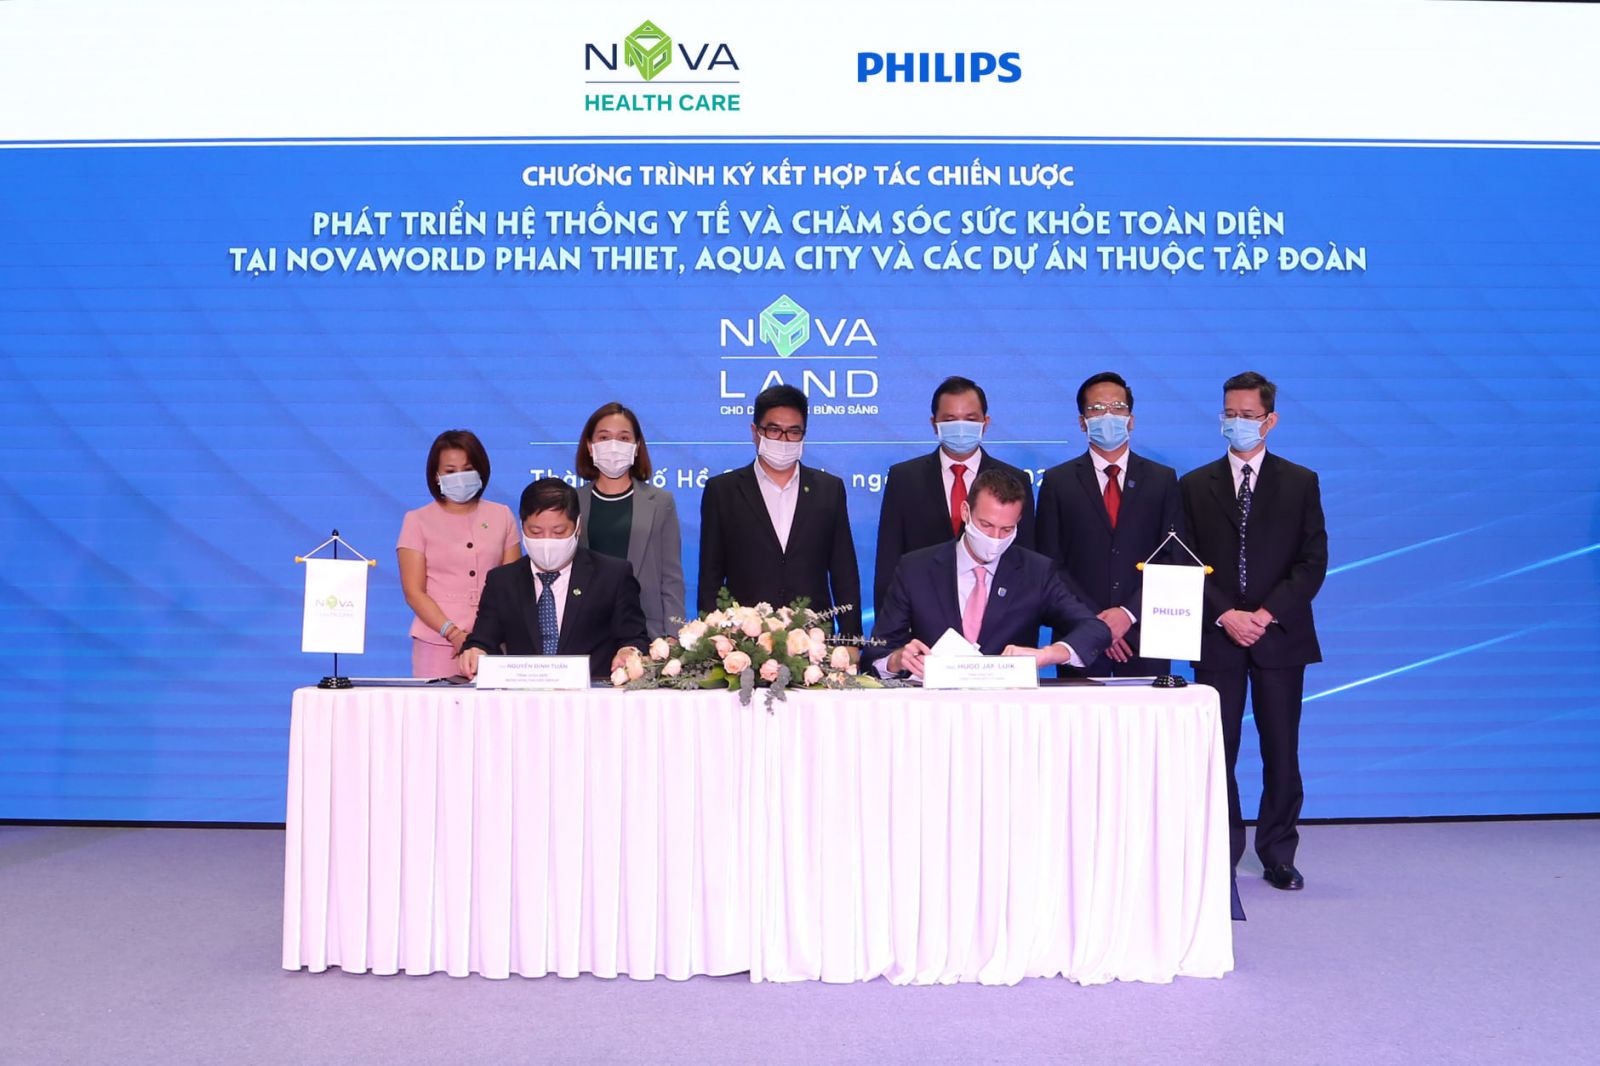 Đại diện Nova Healthcare và Philips trong sự kiện ký kết hợp tác chiến lược